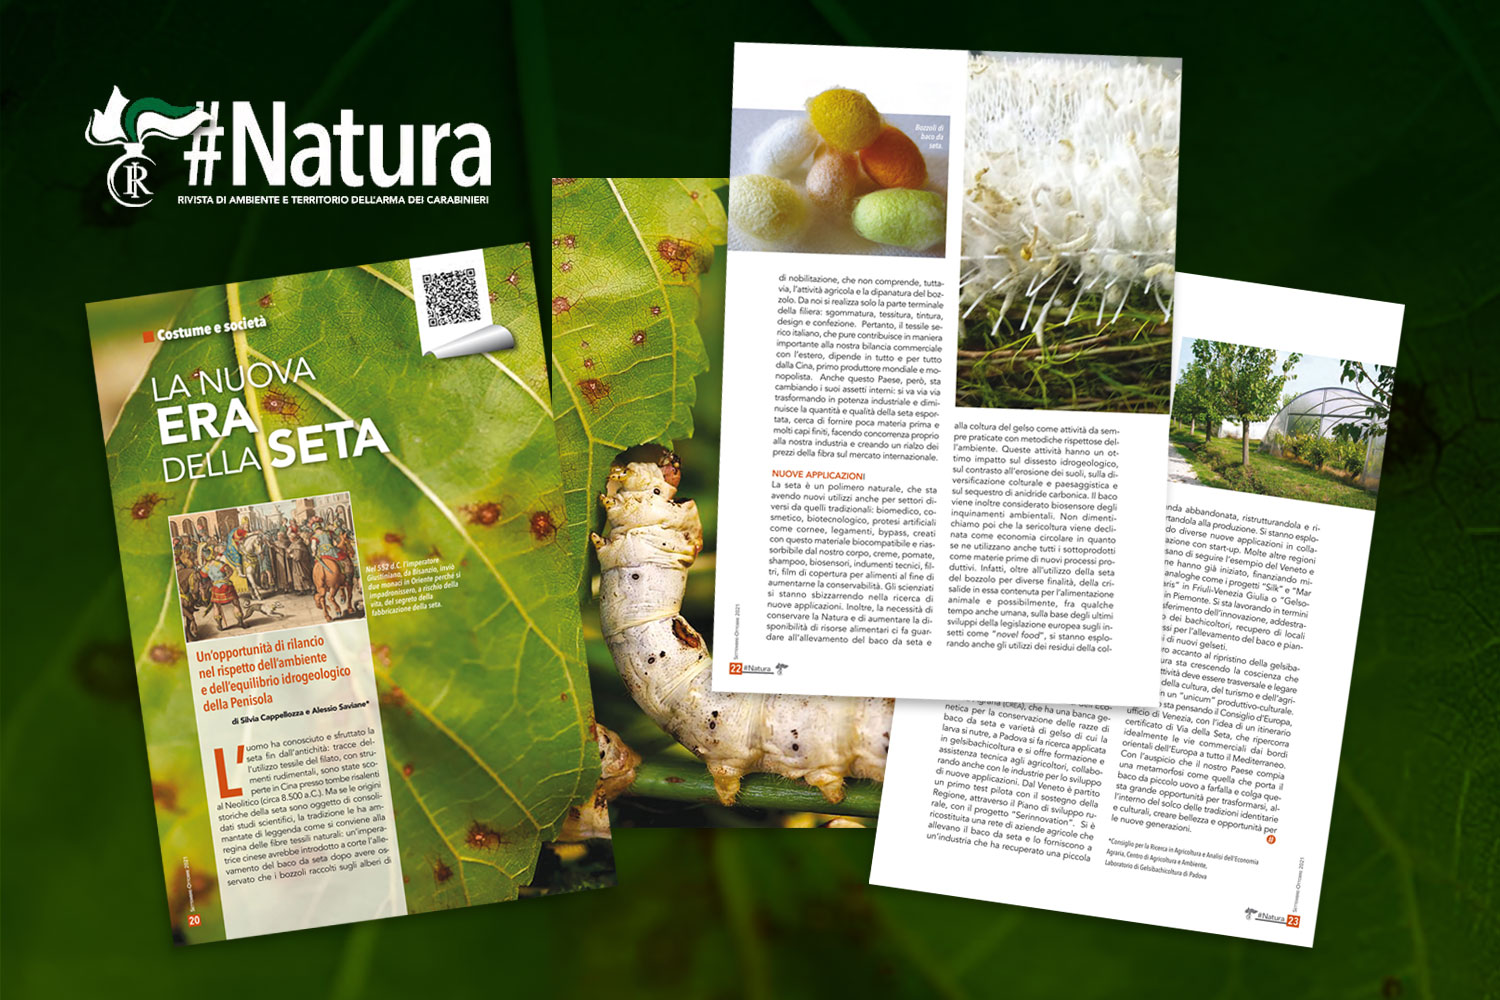 “La nuova era della Seta” su #Natura, la rivista dell’Arma dei Carabinieri